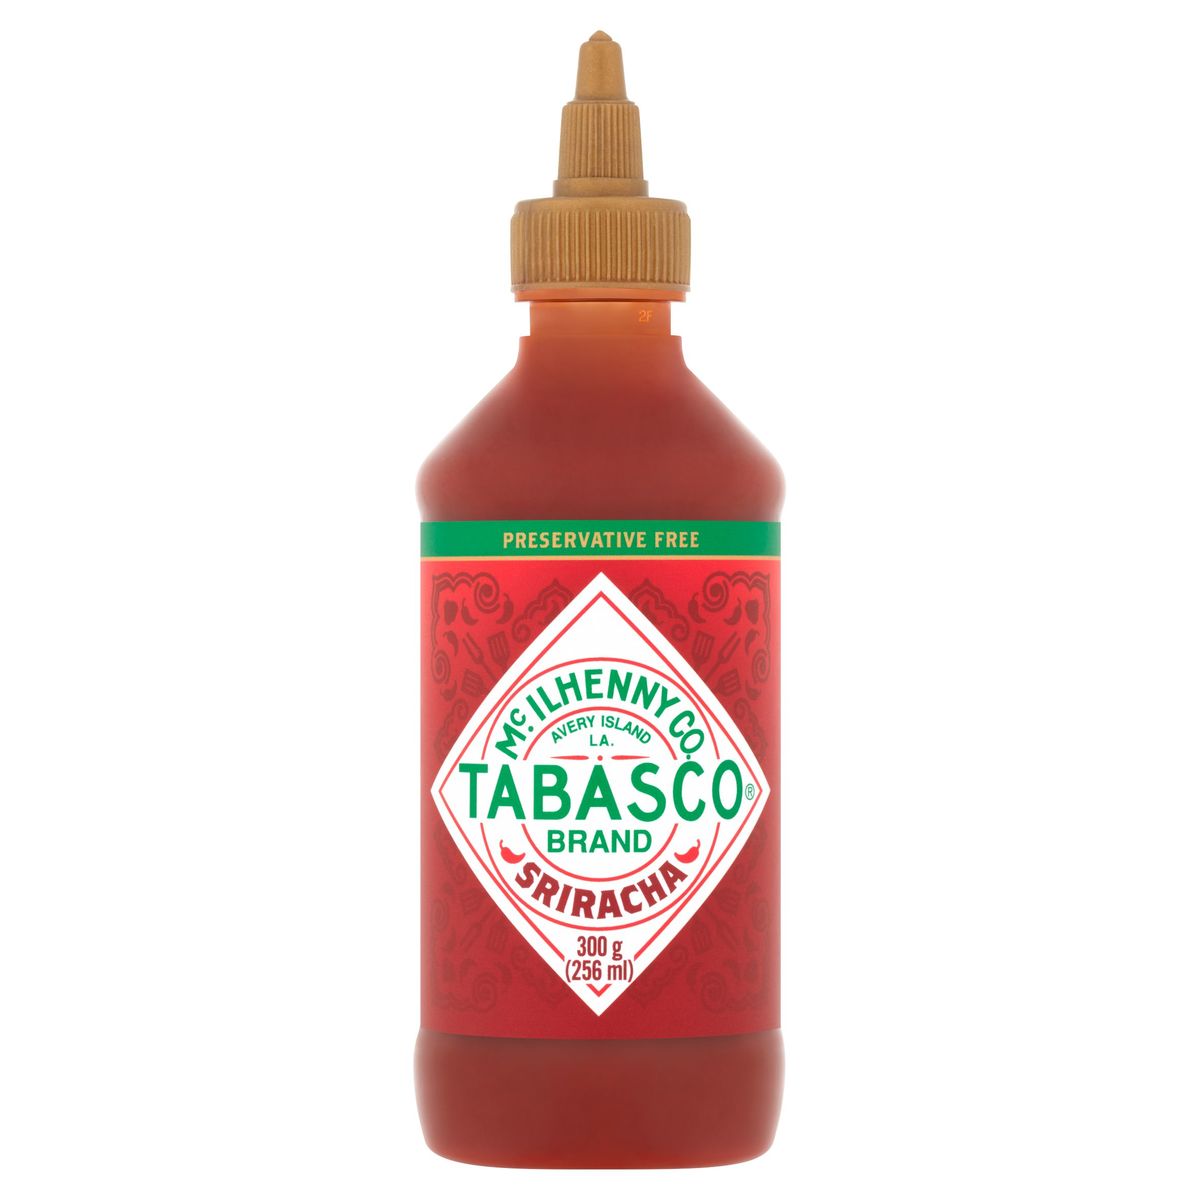 Tabasco Sriracha 256 ml